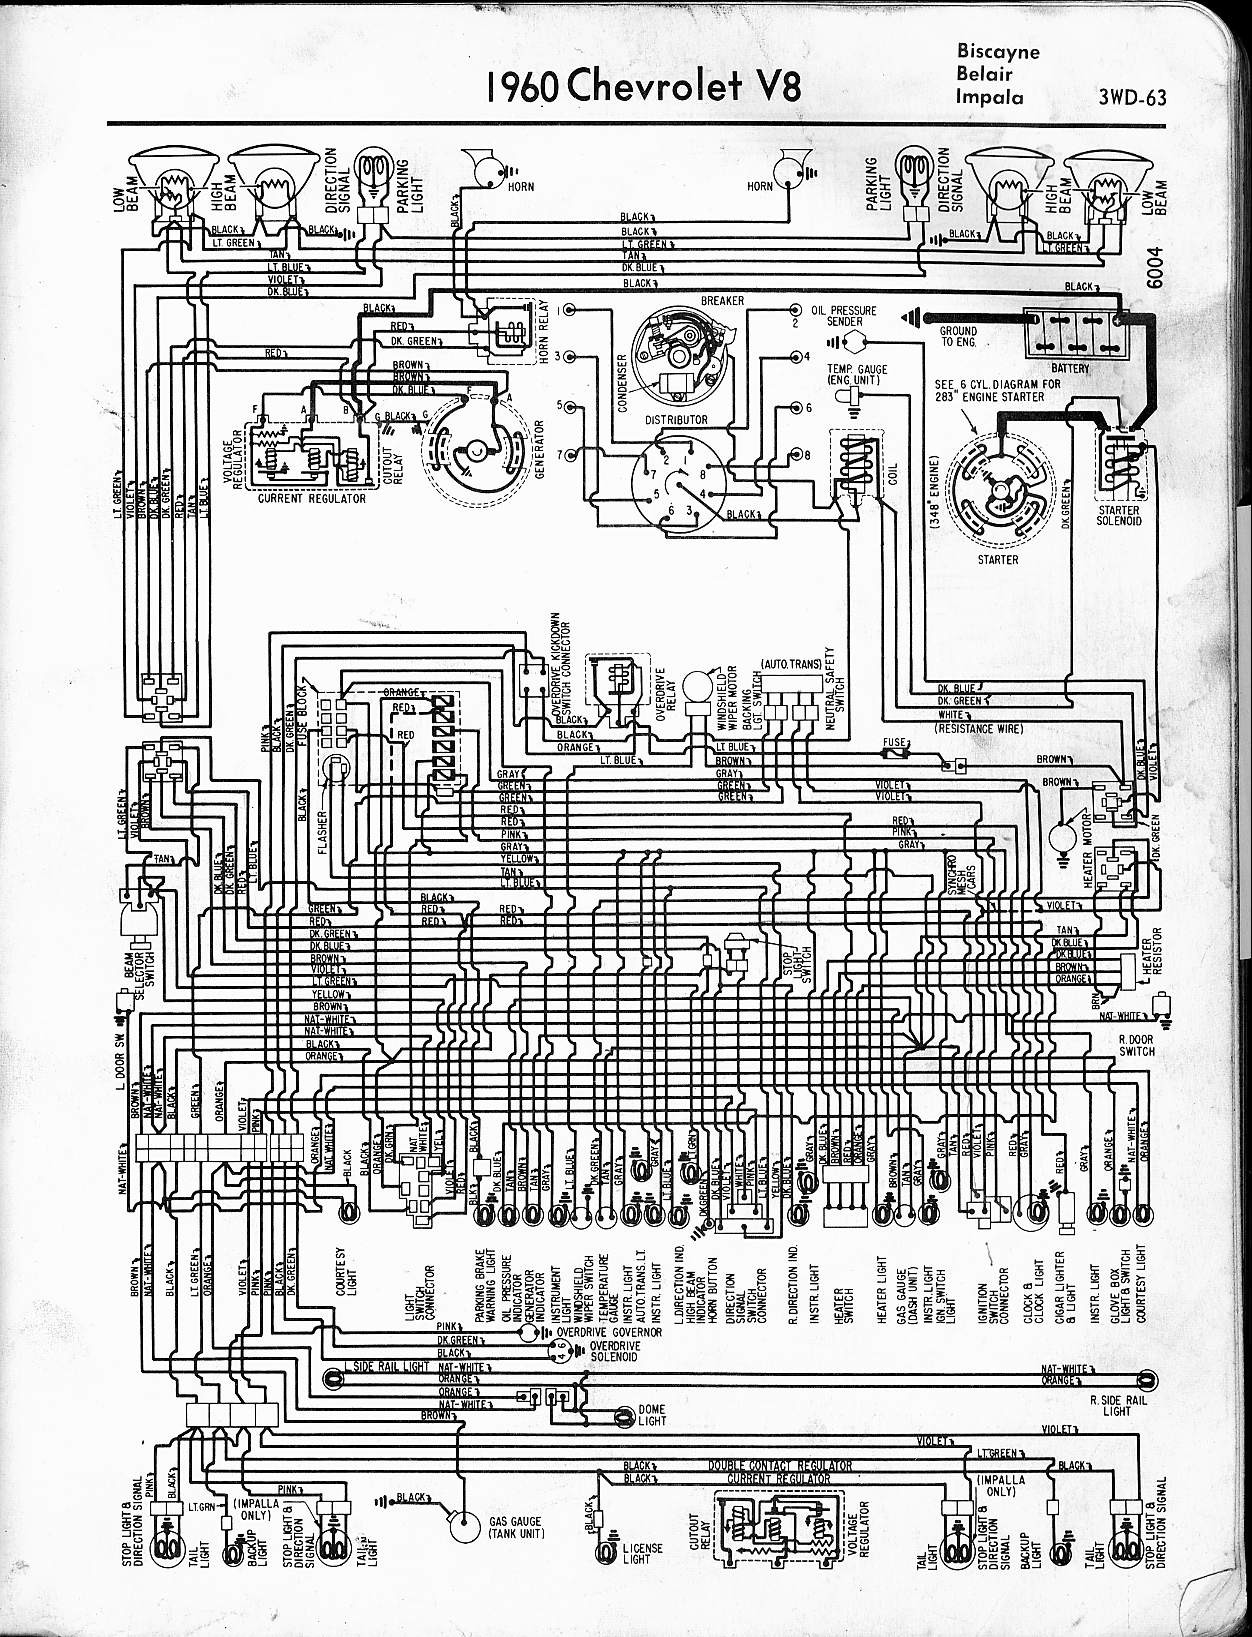 1999 ford Contour Engine Diagram 67af5 1984 Chevrolet Wiring Diagram Of 1999 ford Contour Engine Diagram